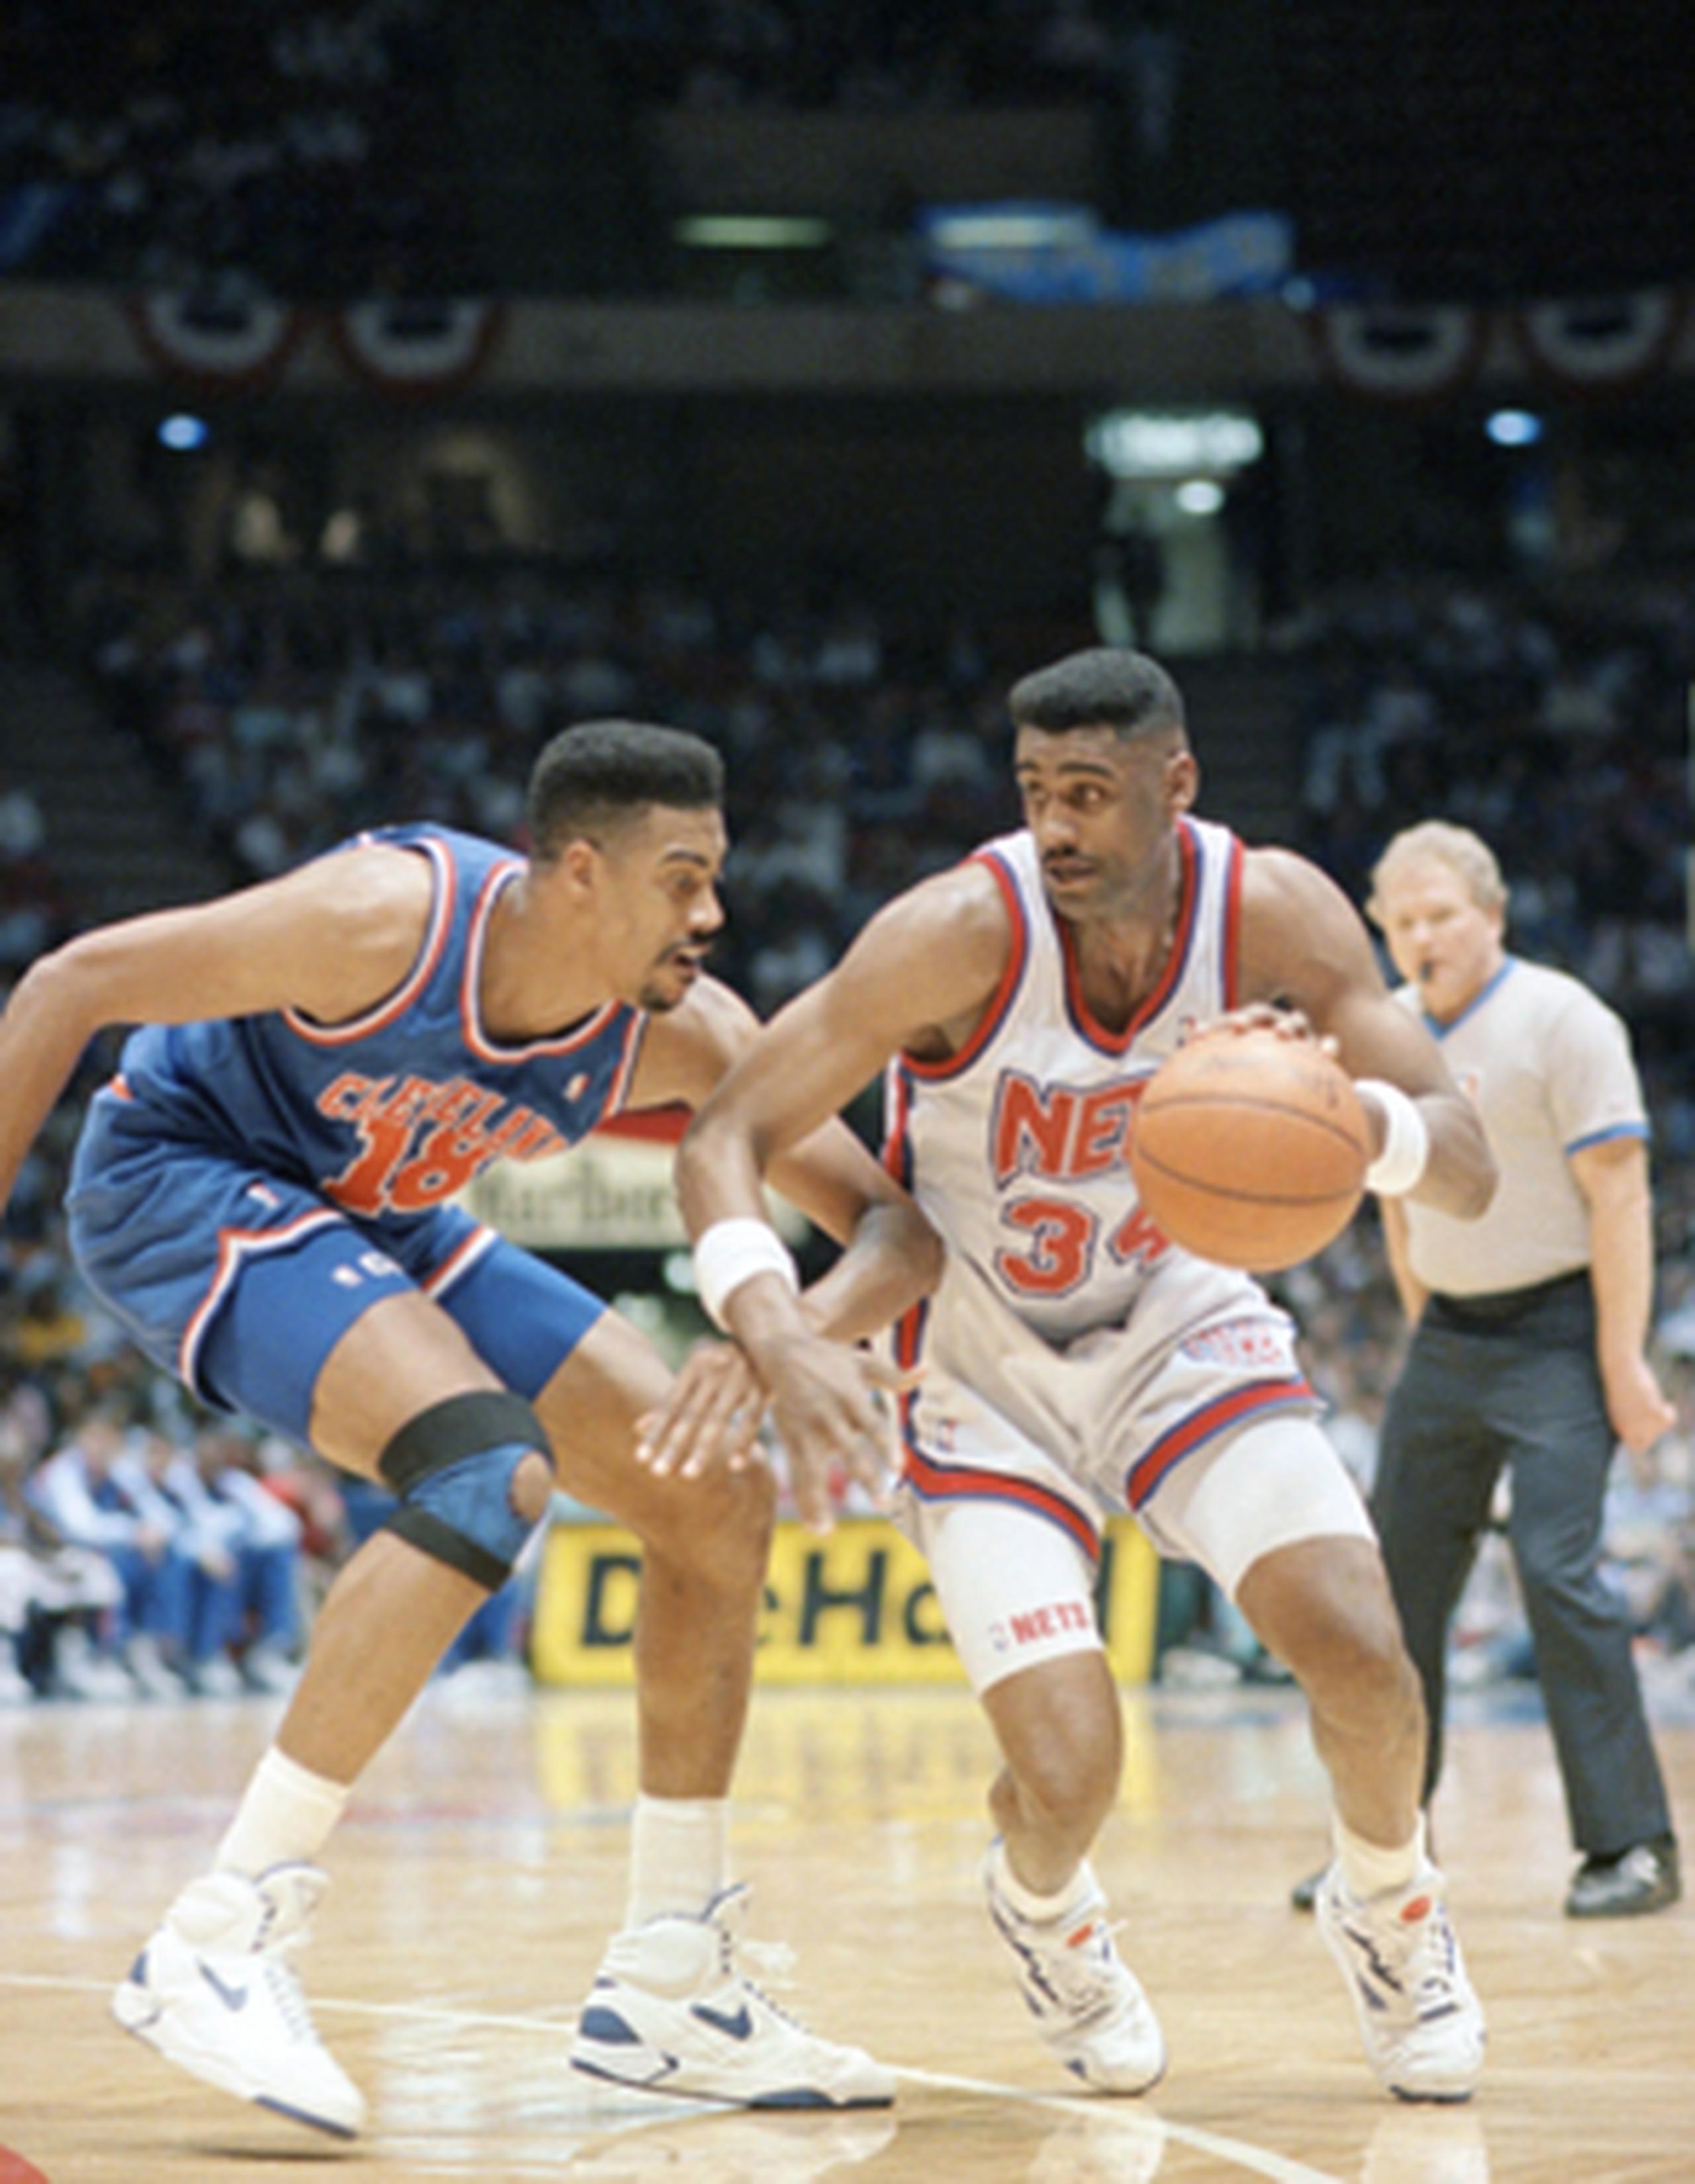 Considerado como uno de los mejores sextos hombres de la NBA durante la década de los 80 y los 90, destacó en los Cavaliers, con los que jugó desde 1986 hasta 1995.(AP Photo/Susan Ragan, File)